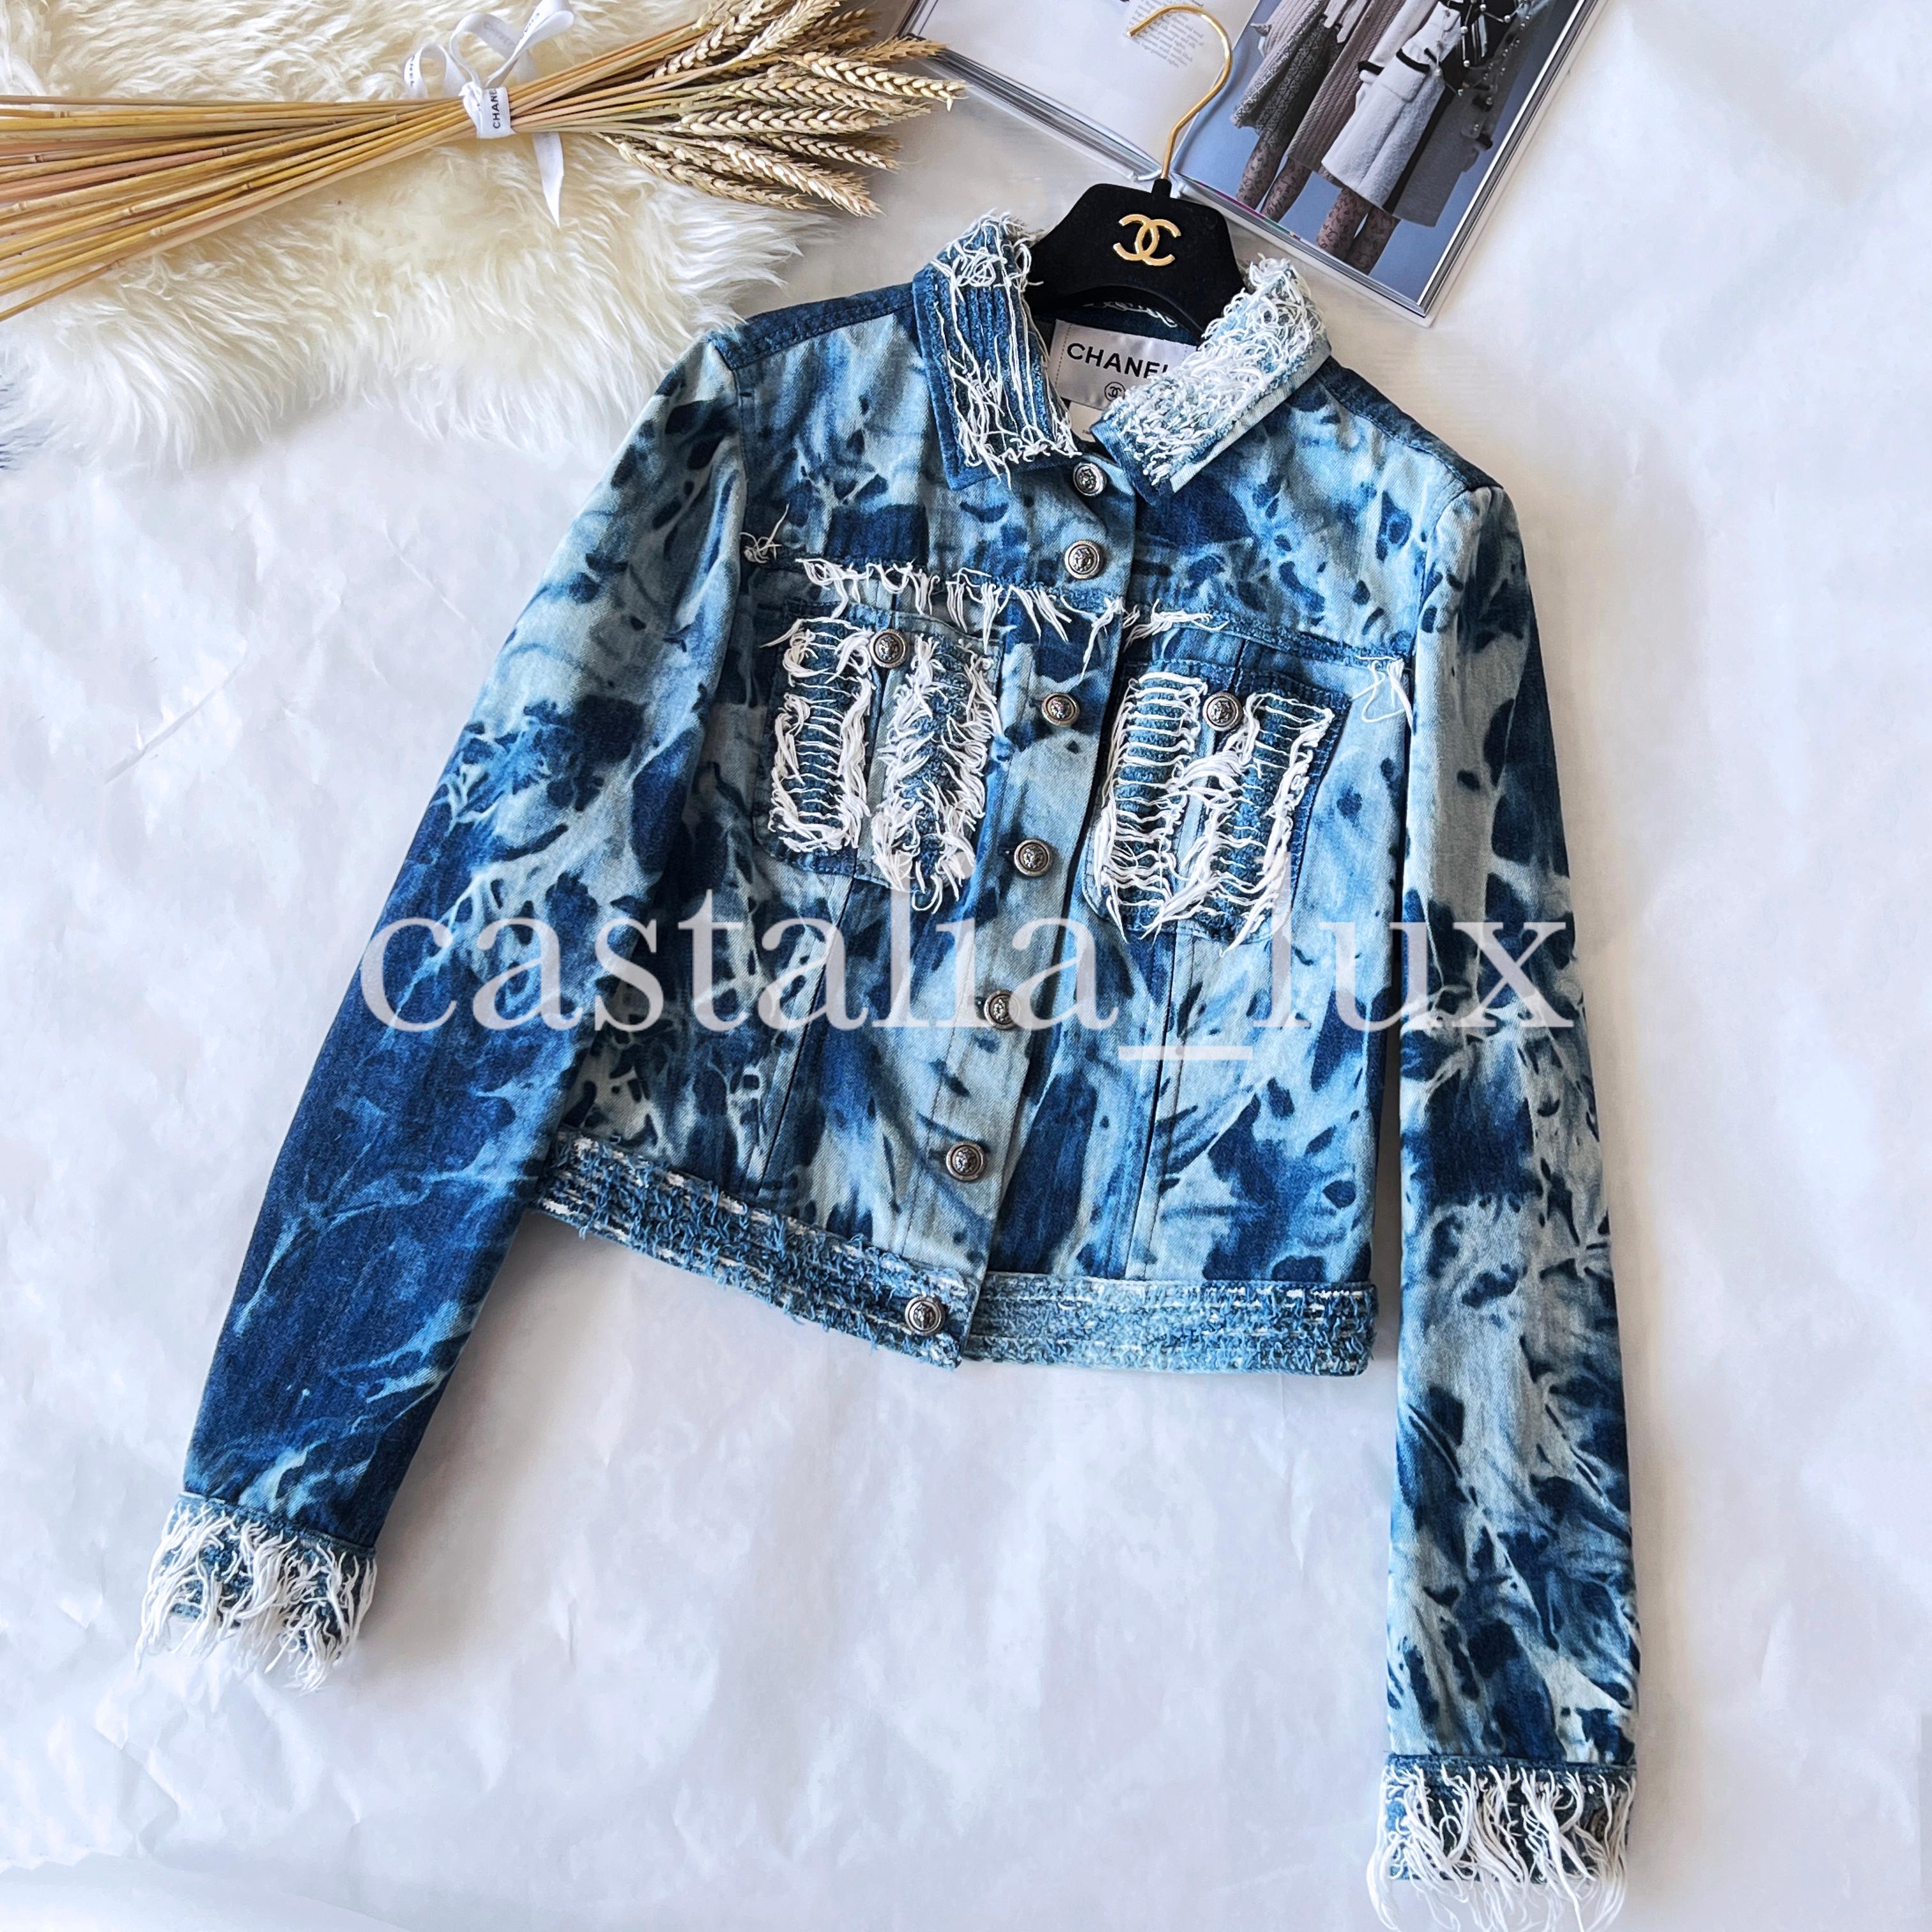 Seltene blaue Chanel-Jeansjacke mit Fransendetails und CC-Logo-Löwenkopfknöpfen. Sammlerstück!
Größenbezeichnung 40 FR. Der Zustand ist tadellos, keine Abnutzungserscheinungen.